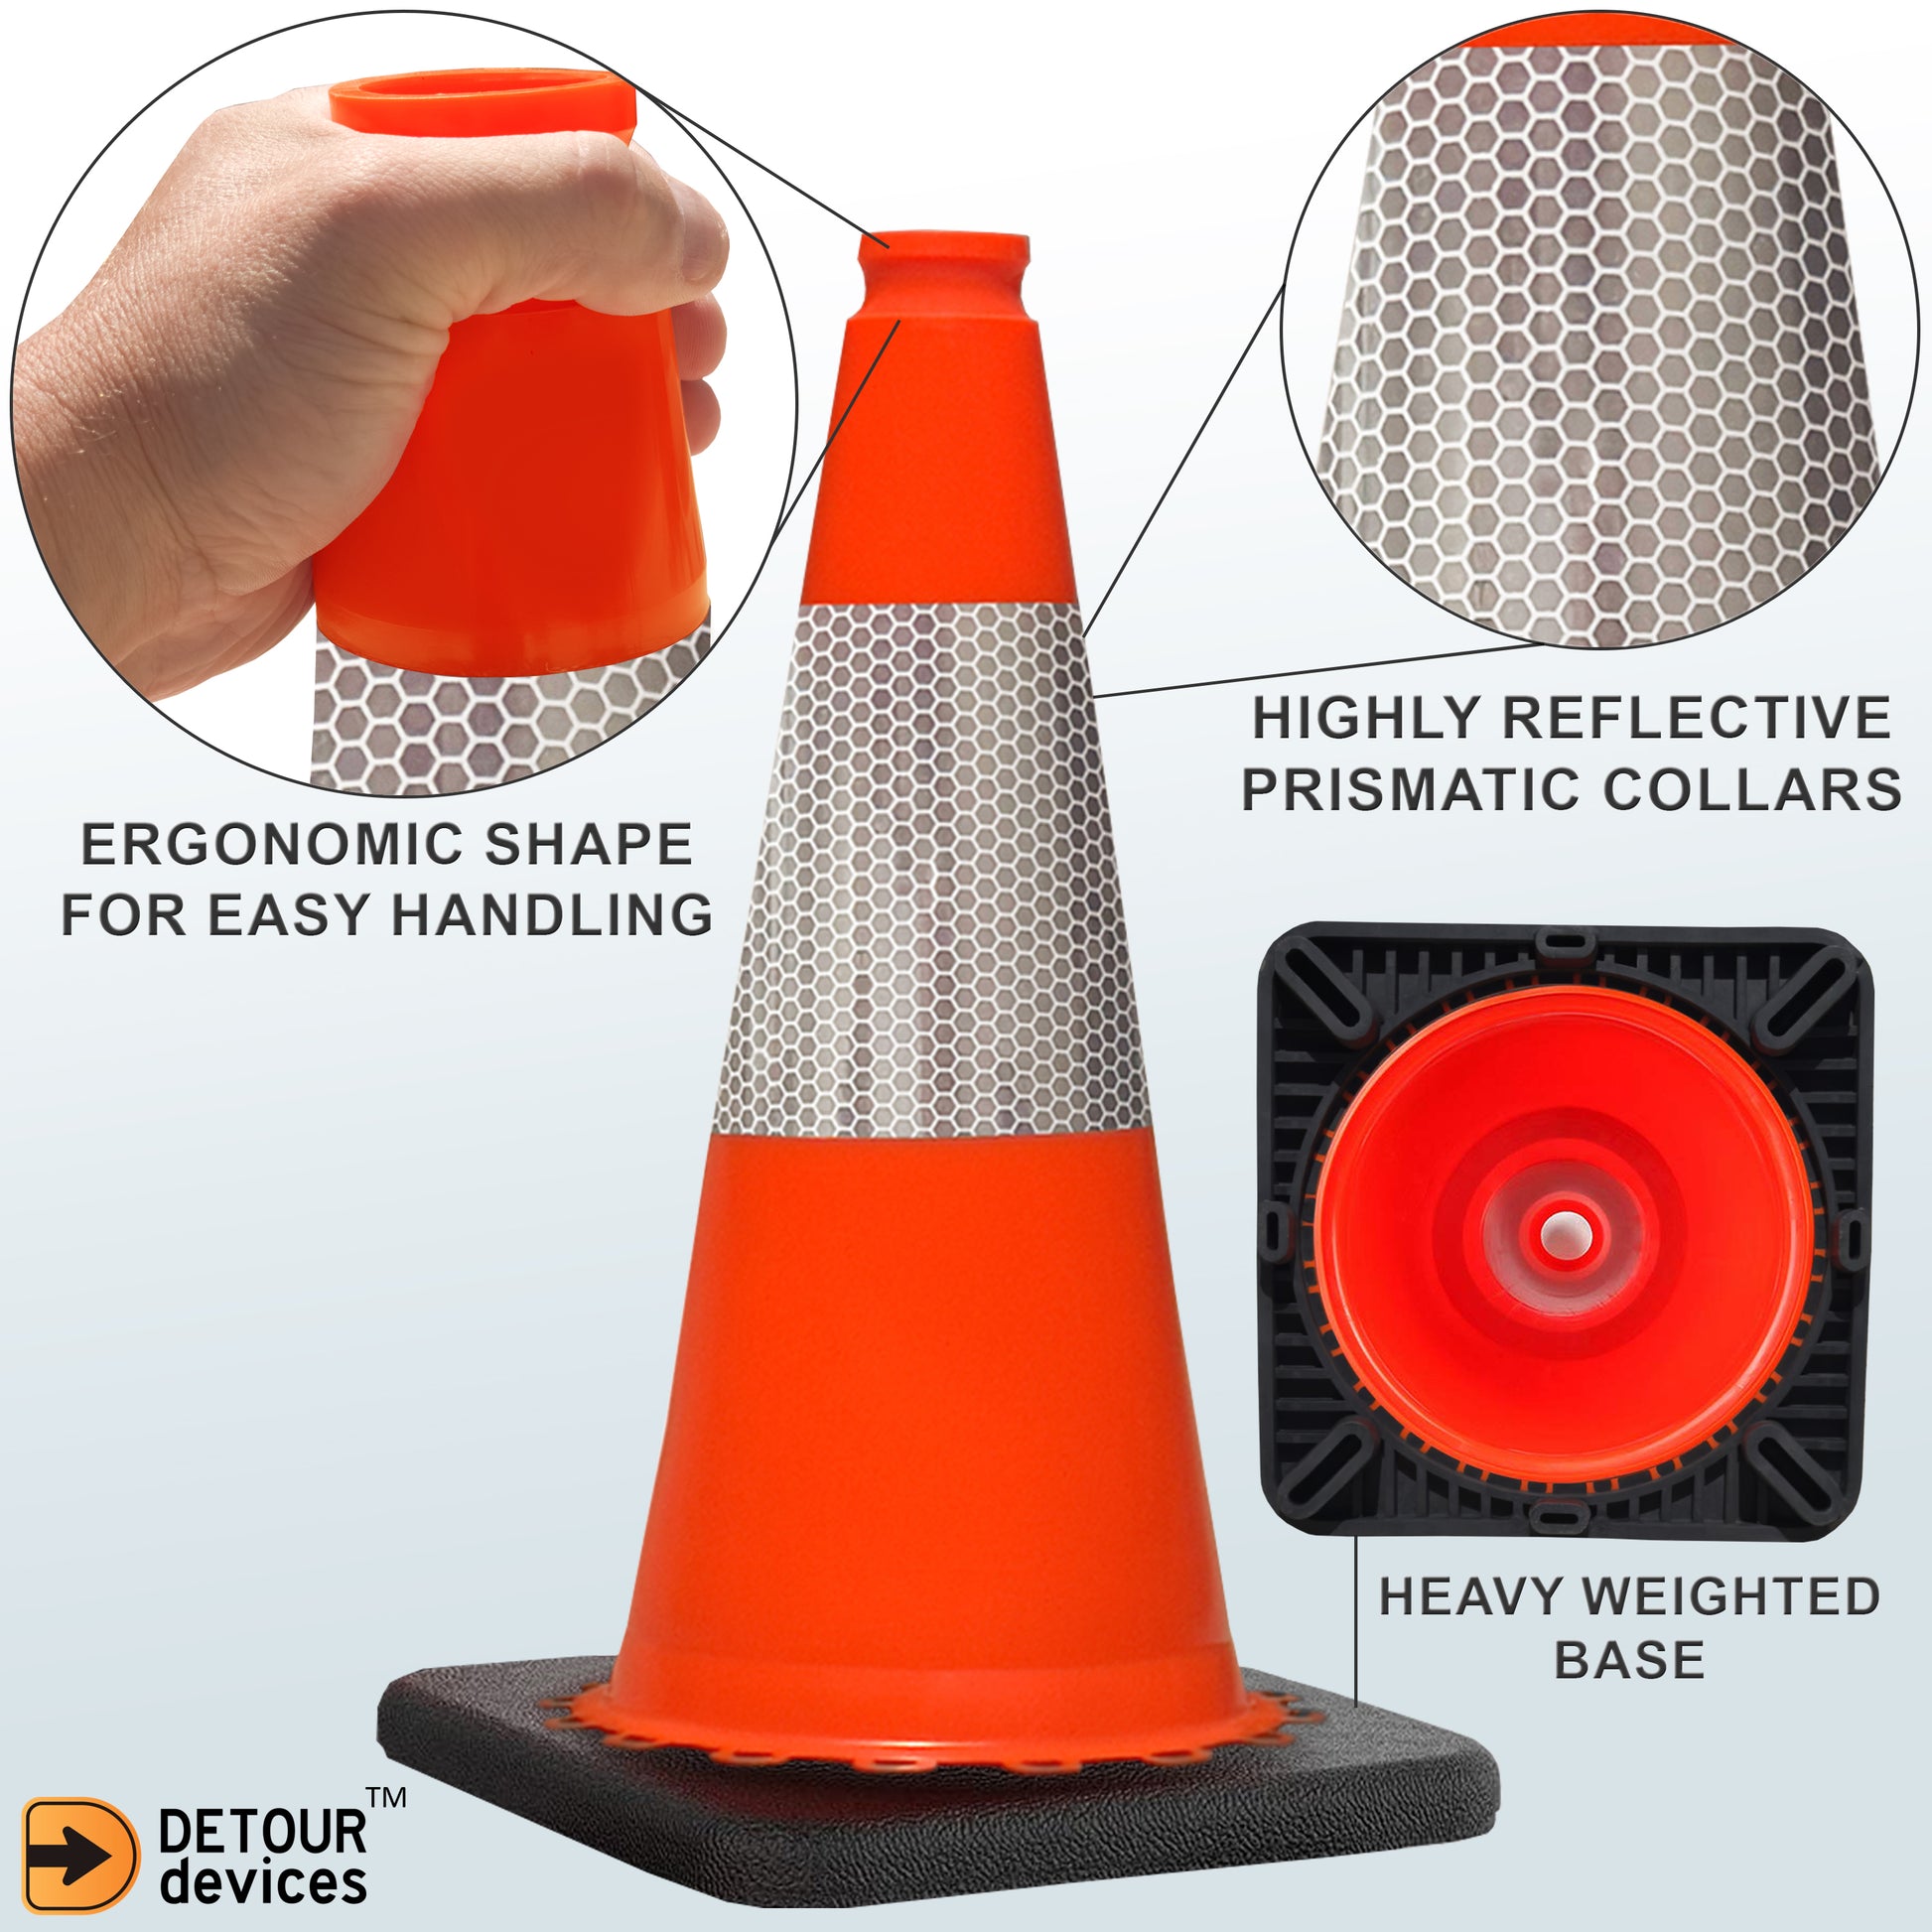 24 of Orange Traffic Cones 18 Inch , Multipurpose PVC Plastic Safety Cone